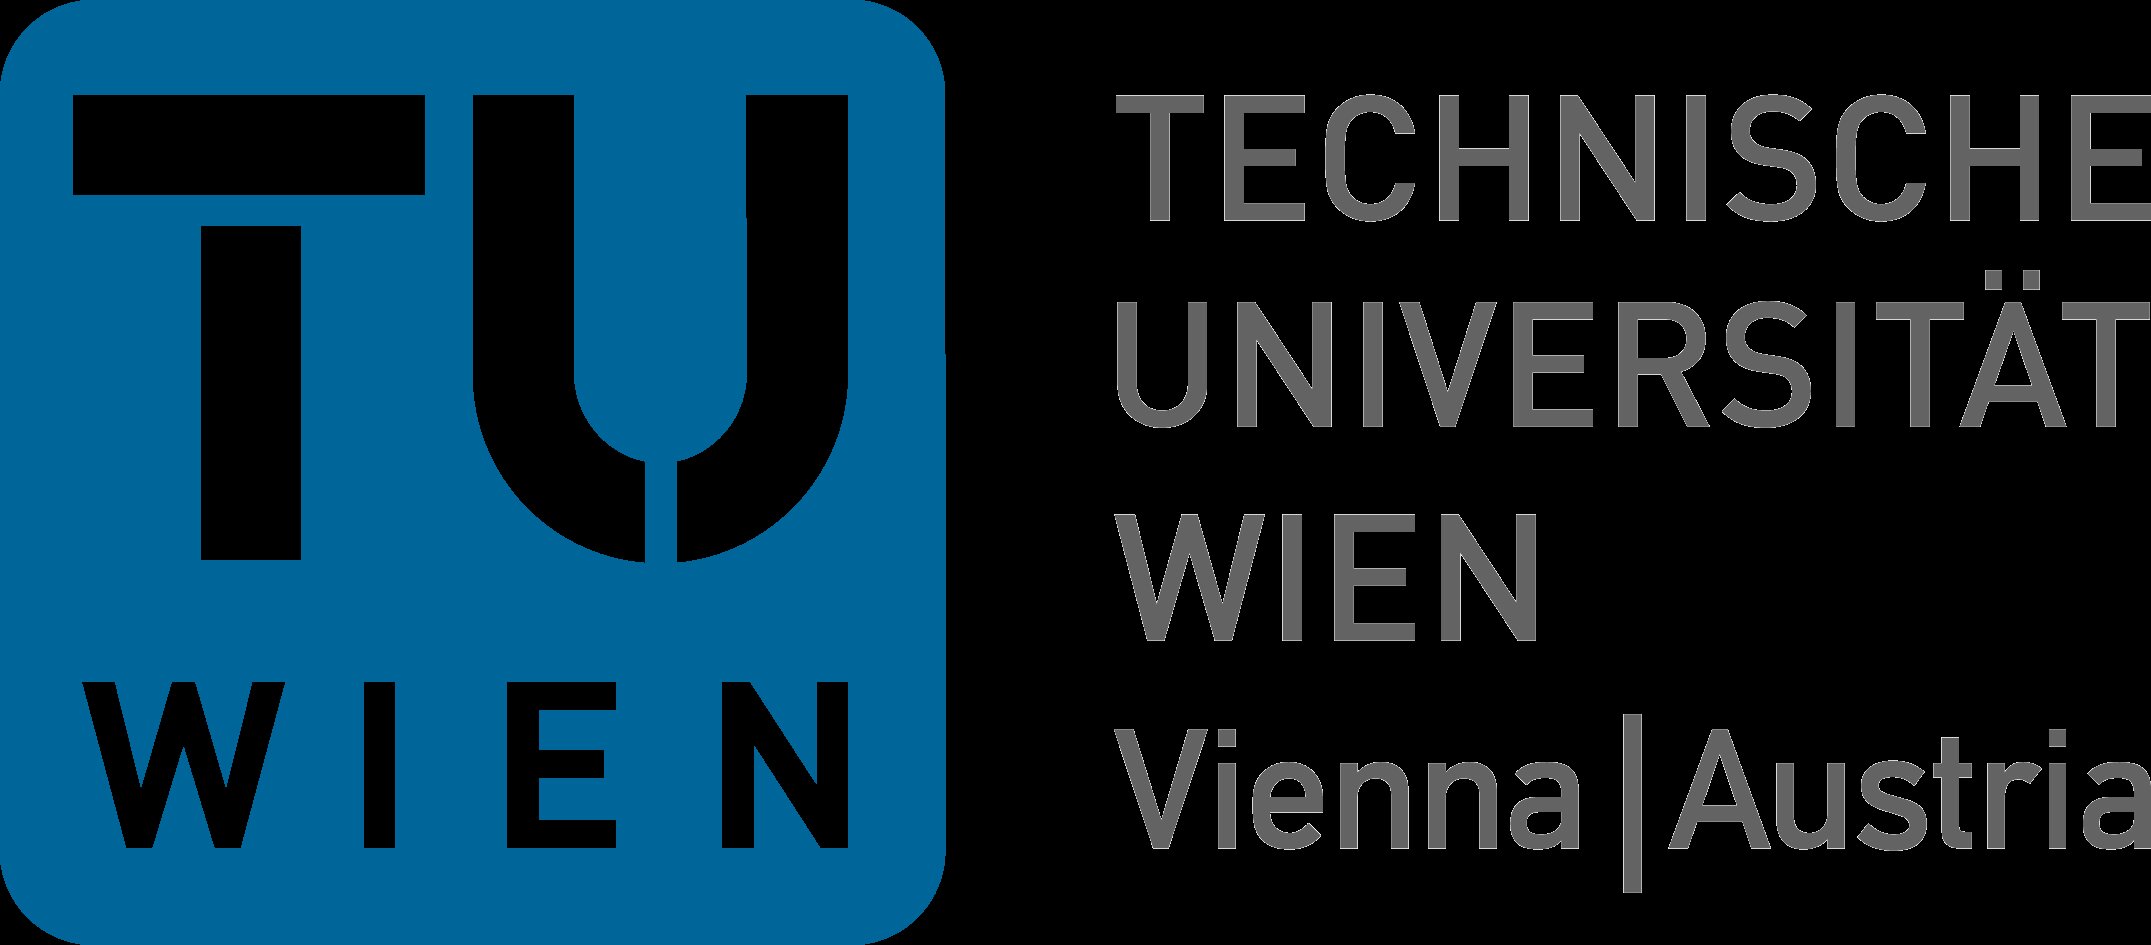 Technical University Wien